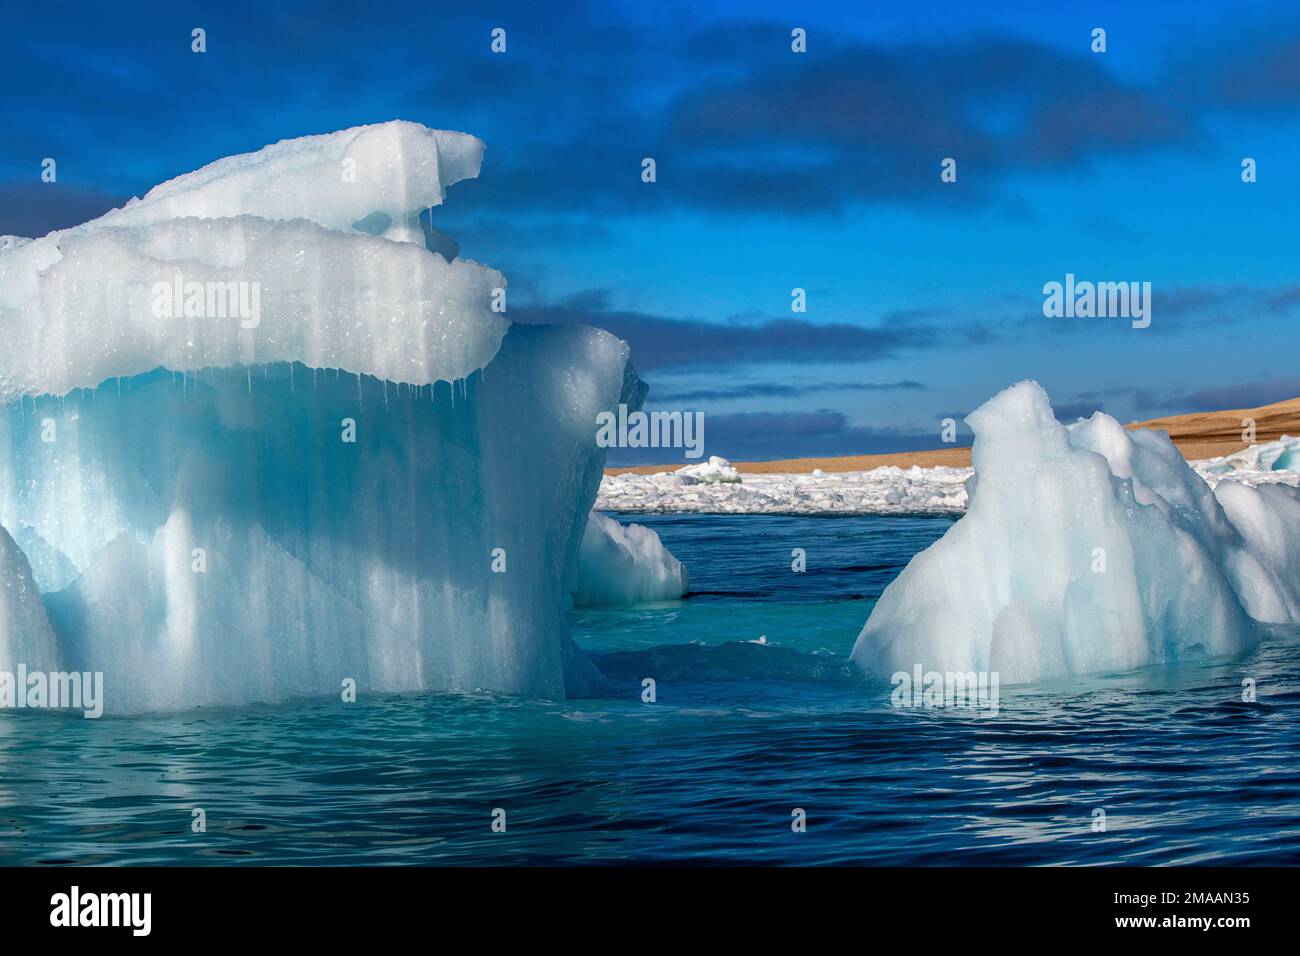 Nice bleu icebers à Torellneset, Svalbard. Expédition navire de croisière Greg Mortimer dans l'archipel de Svalbard, dans l'Arctique de la Norvège. Storøya est une île à t Banque D'Images